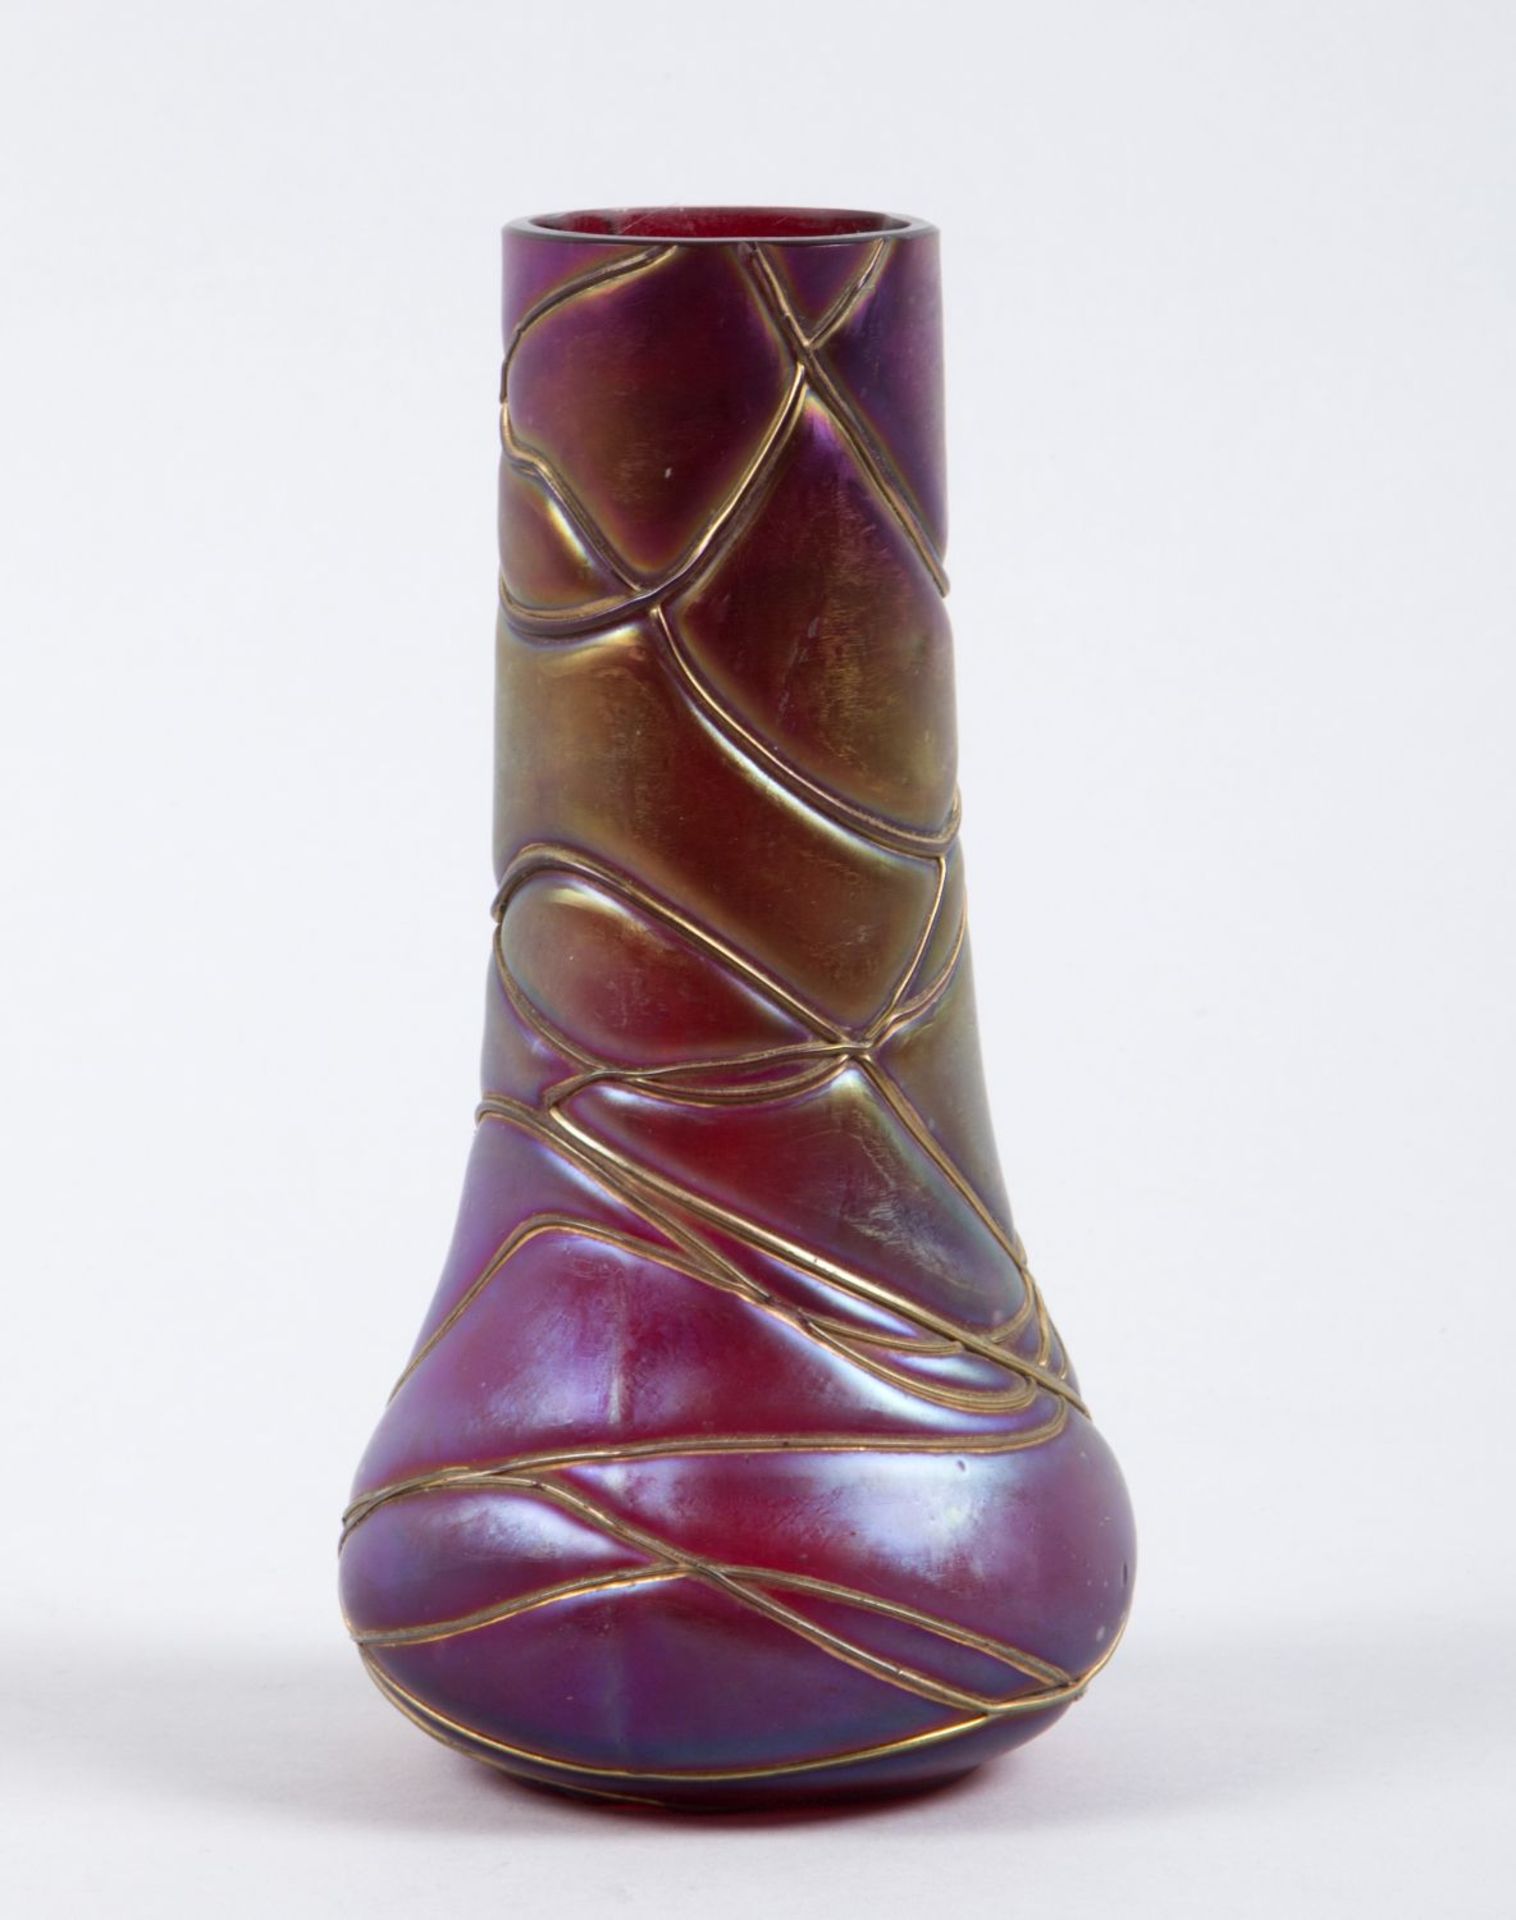 Vase Farbloses Glas, dunkelviolett unterfangen. Mit farbl. und rubinrot geäderten Fäden net